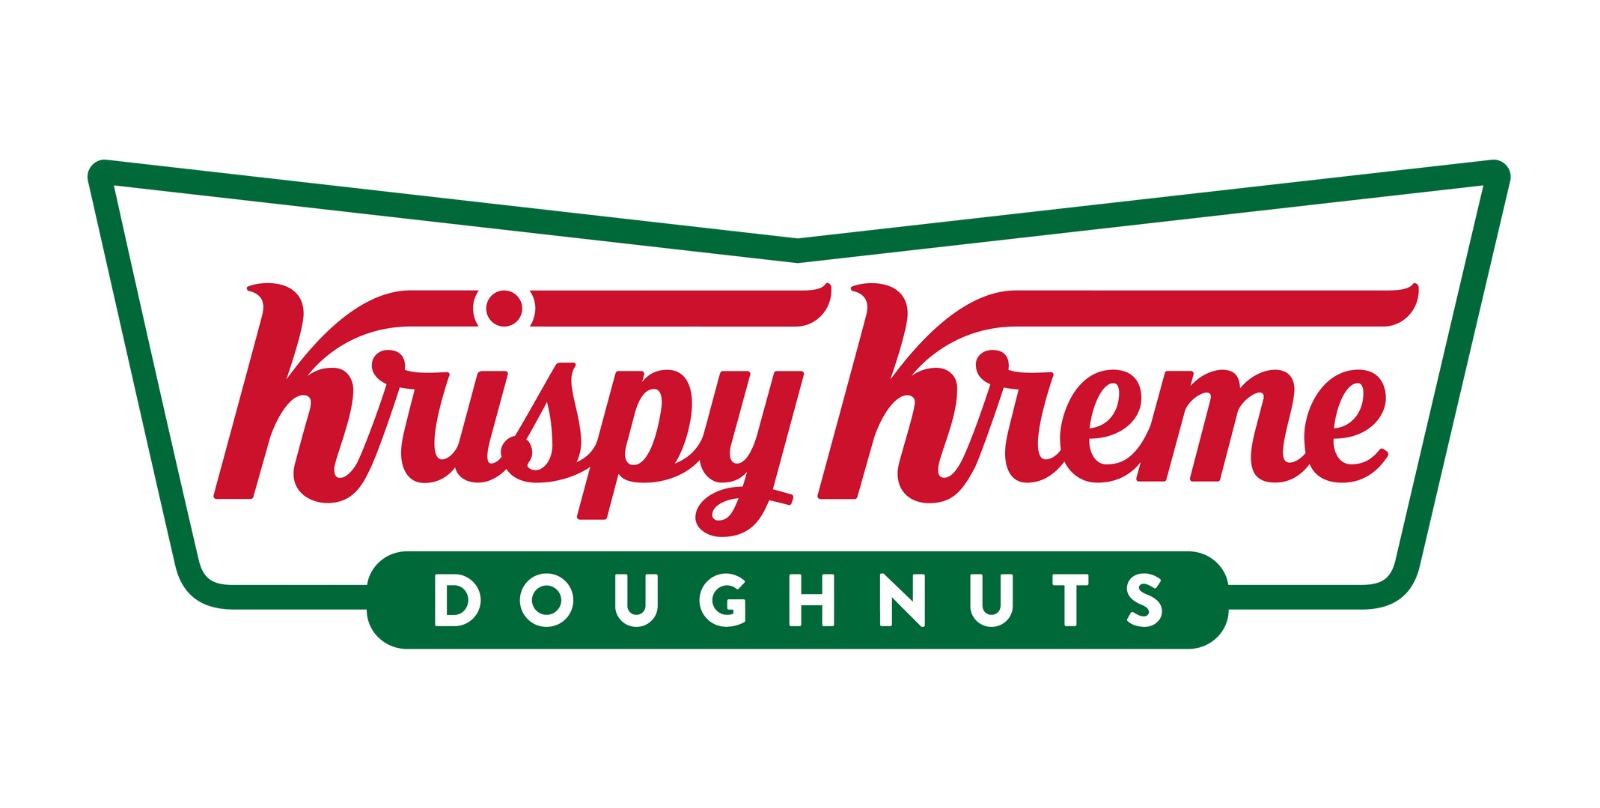 Krispy Kreme Menu Prices in Australia